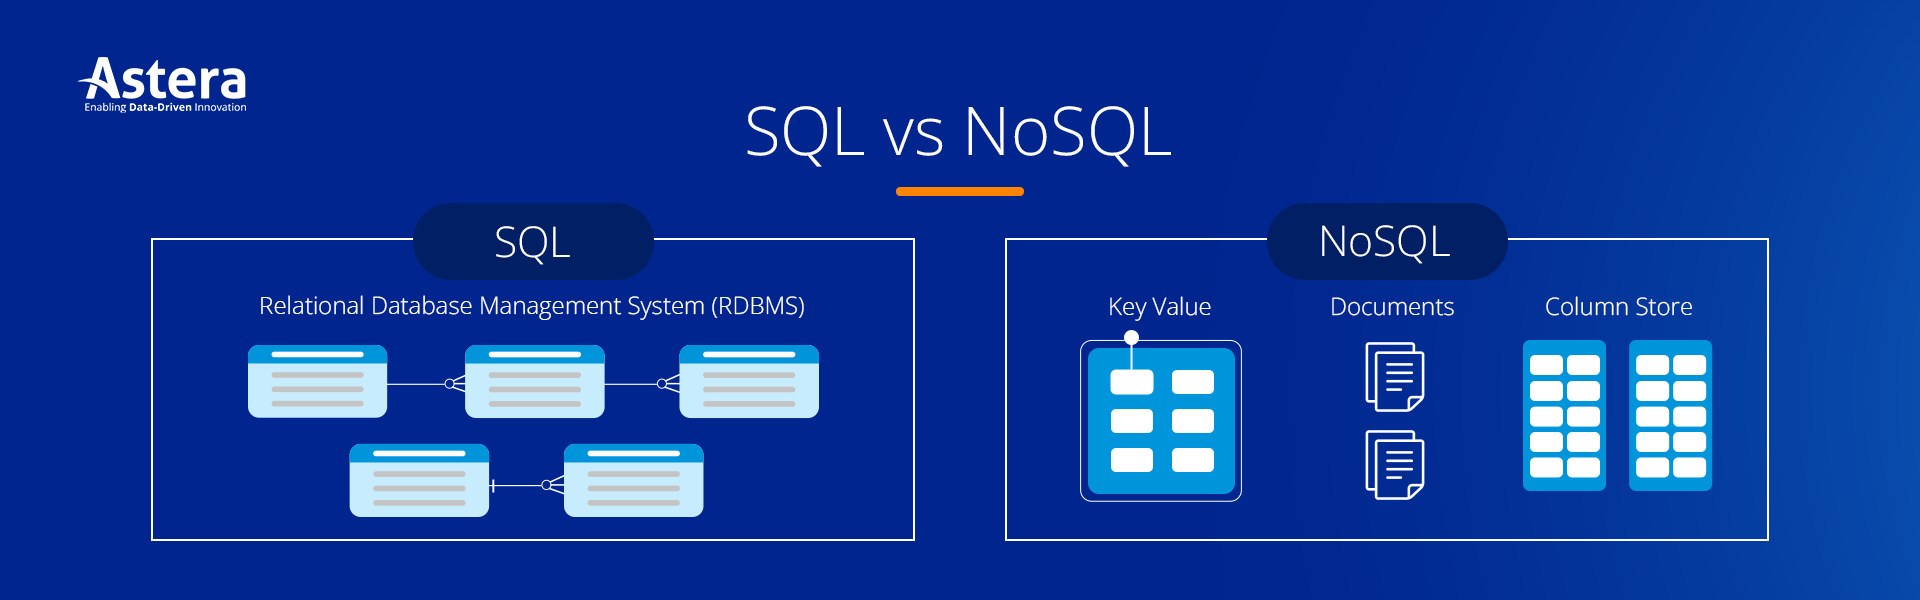 SQL vs noSQL